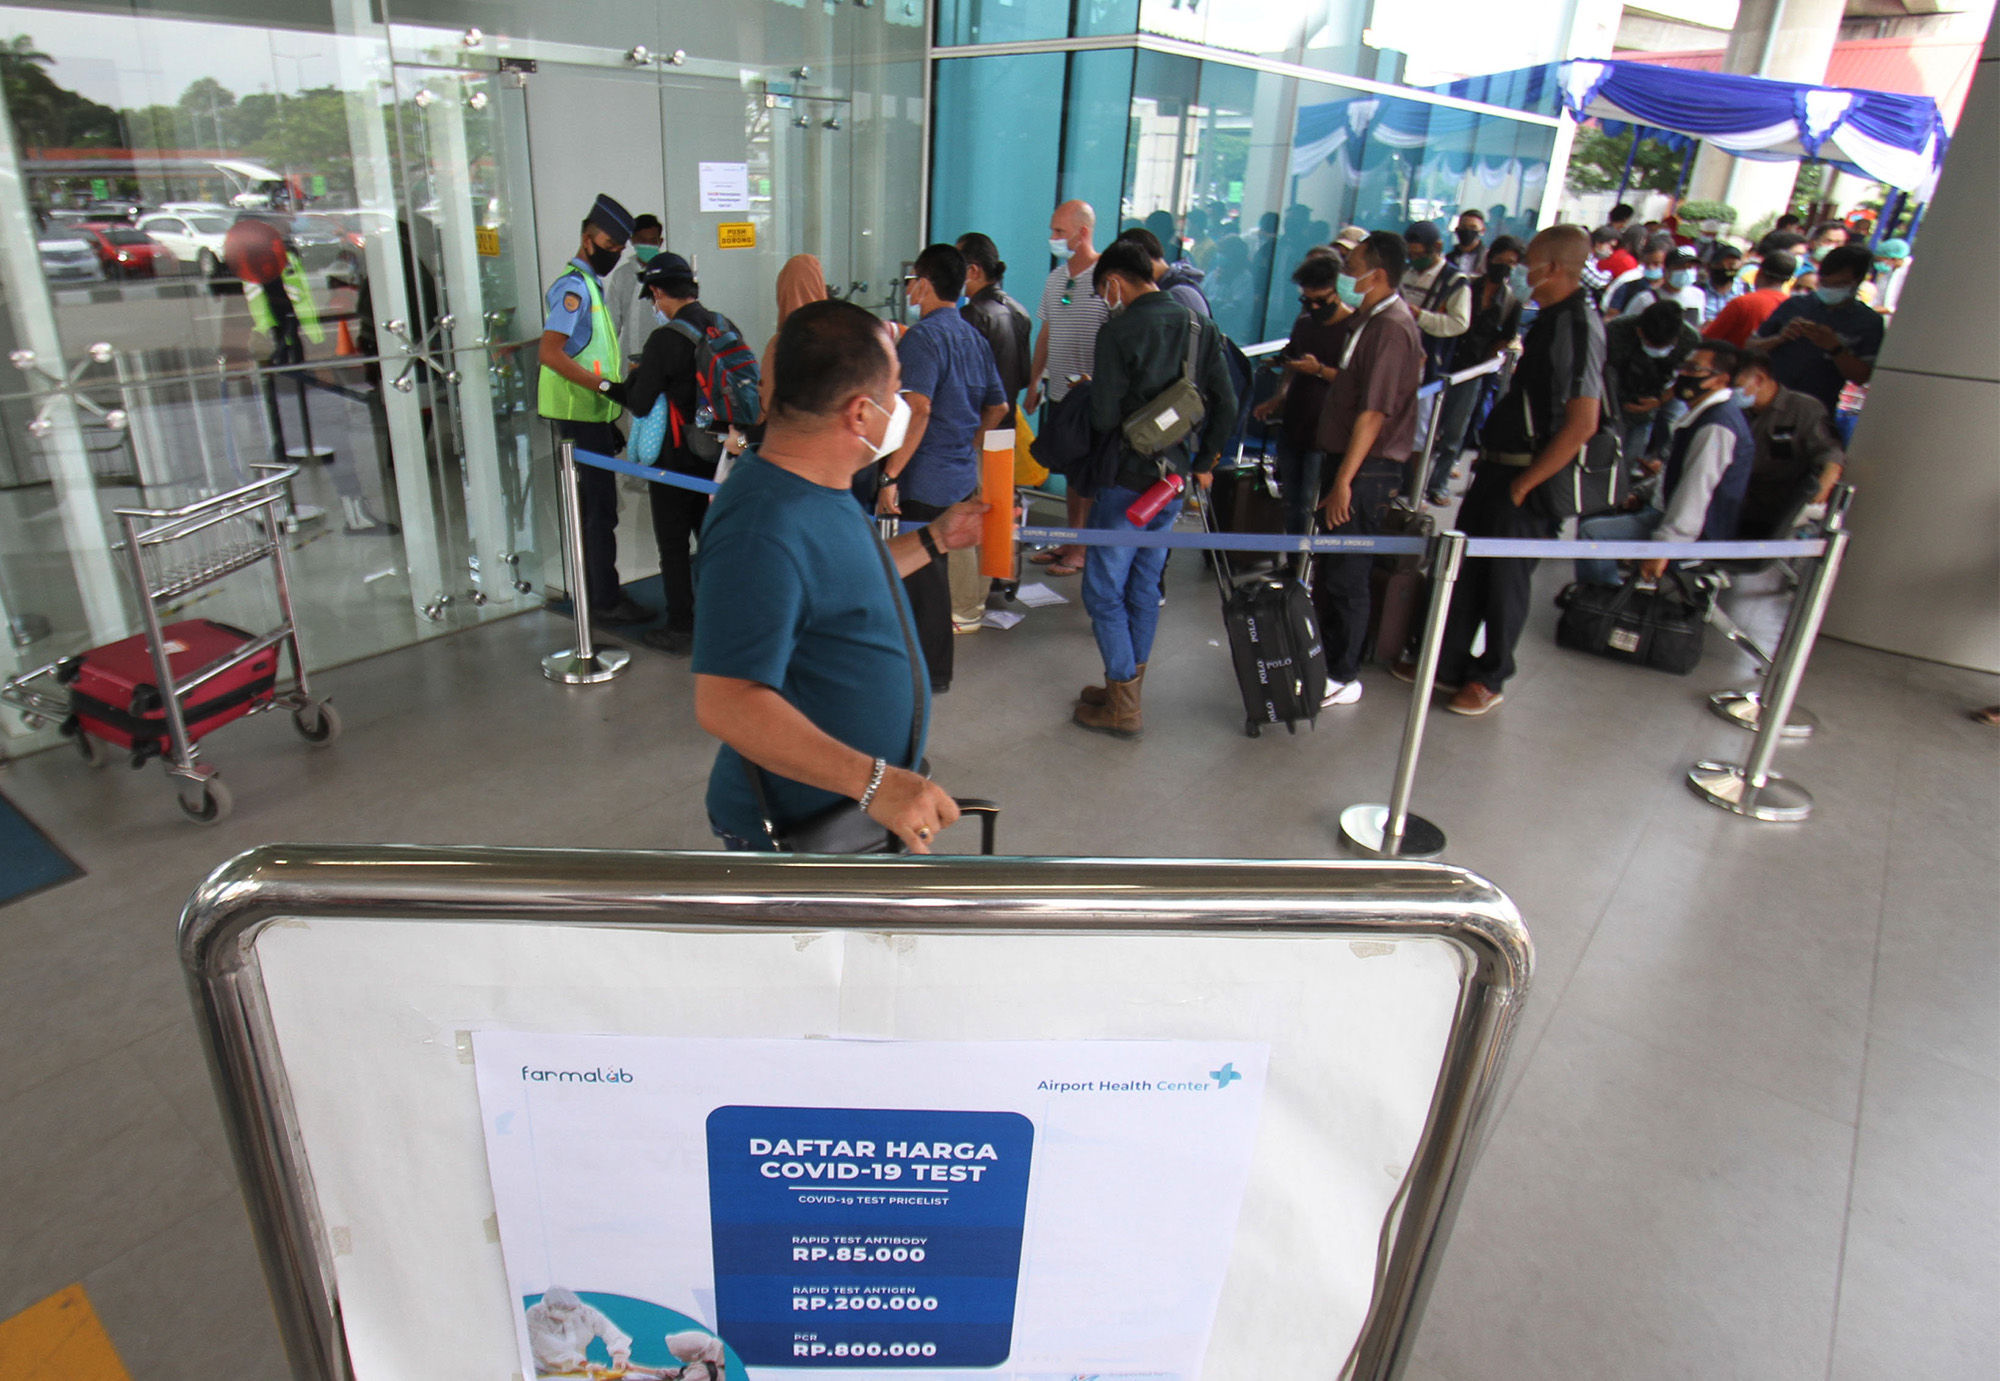 <p>Calon penumpang pesawat mengantre untuk mengikuti tes cepat antigen di area Terminal 2 Bandara Soekarno Hatta, Tangerang, Banten, Selasa, 22 Desember 2020. Foto: Panji Asmoro/TrenAsia</p>
